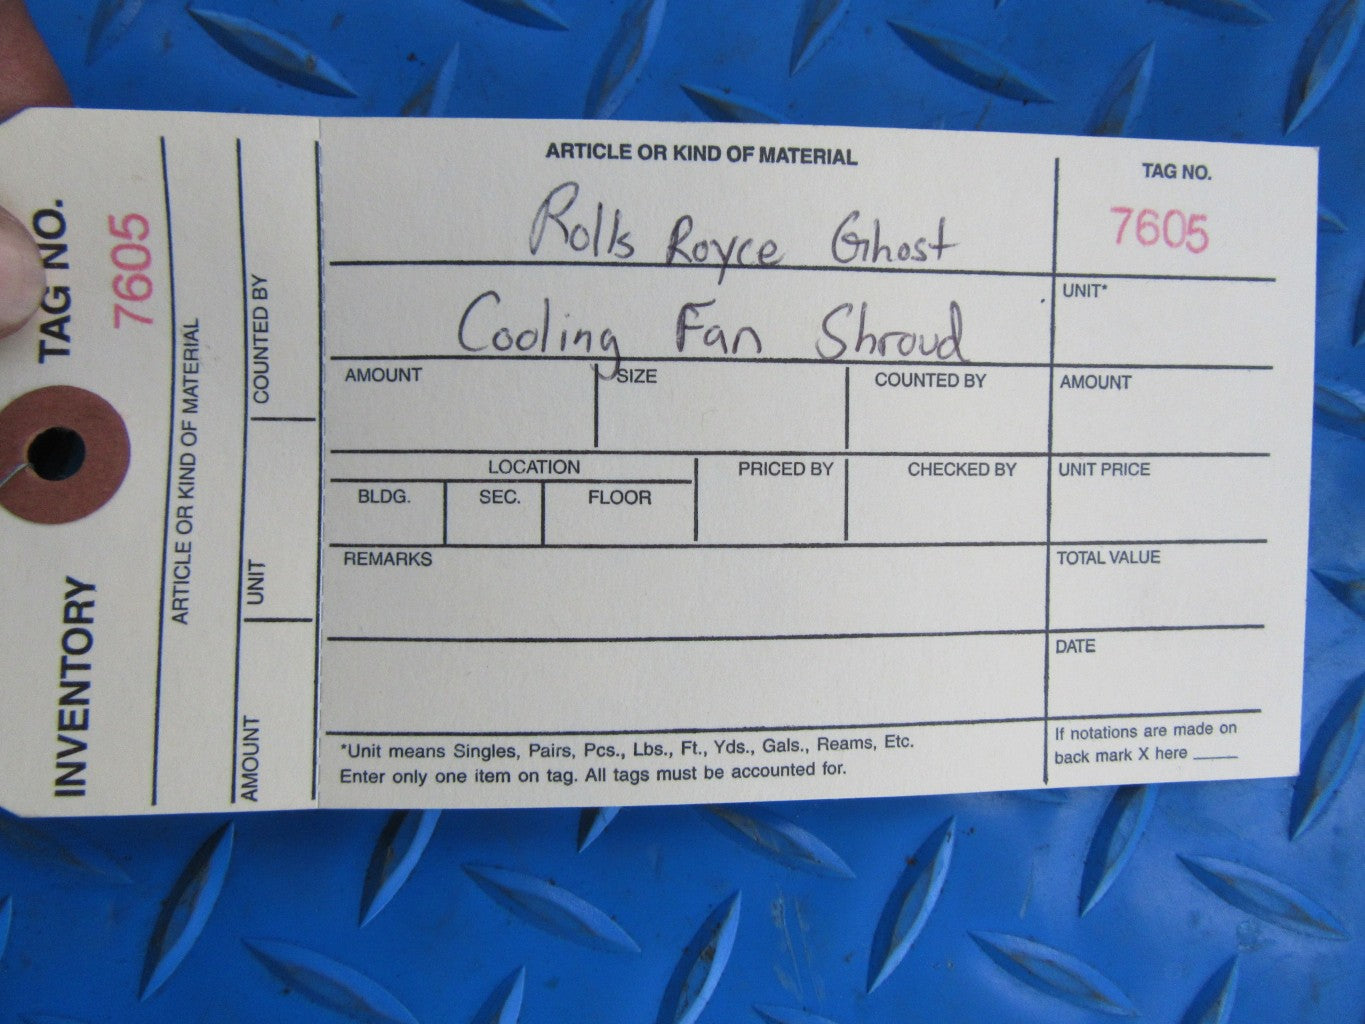 Rolls Royce Ghost Wraith Dawn radiator cooling fan shroud #7605